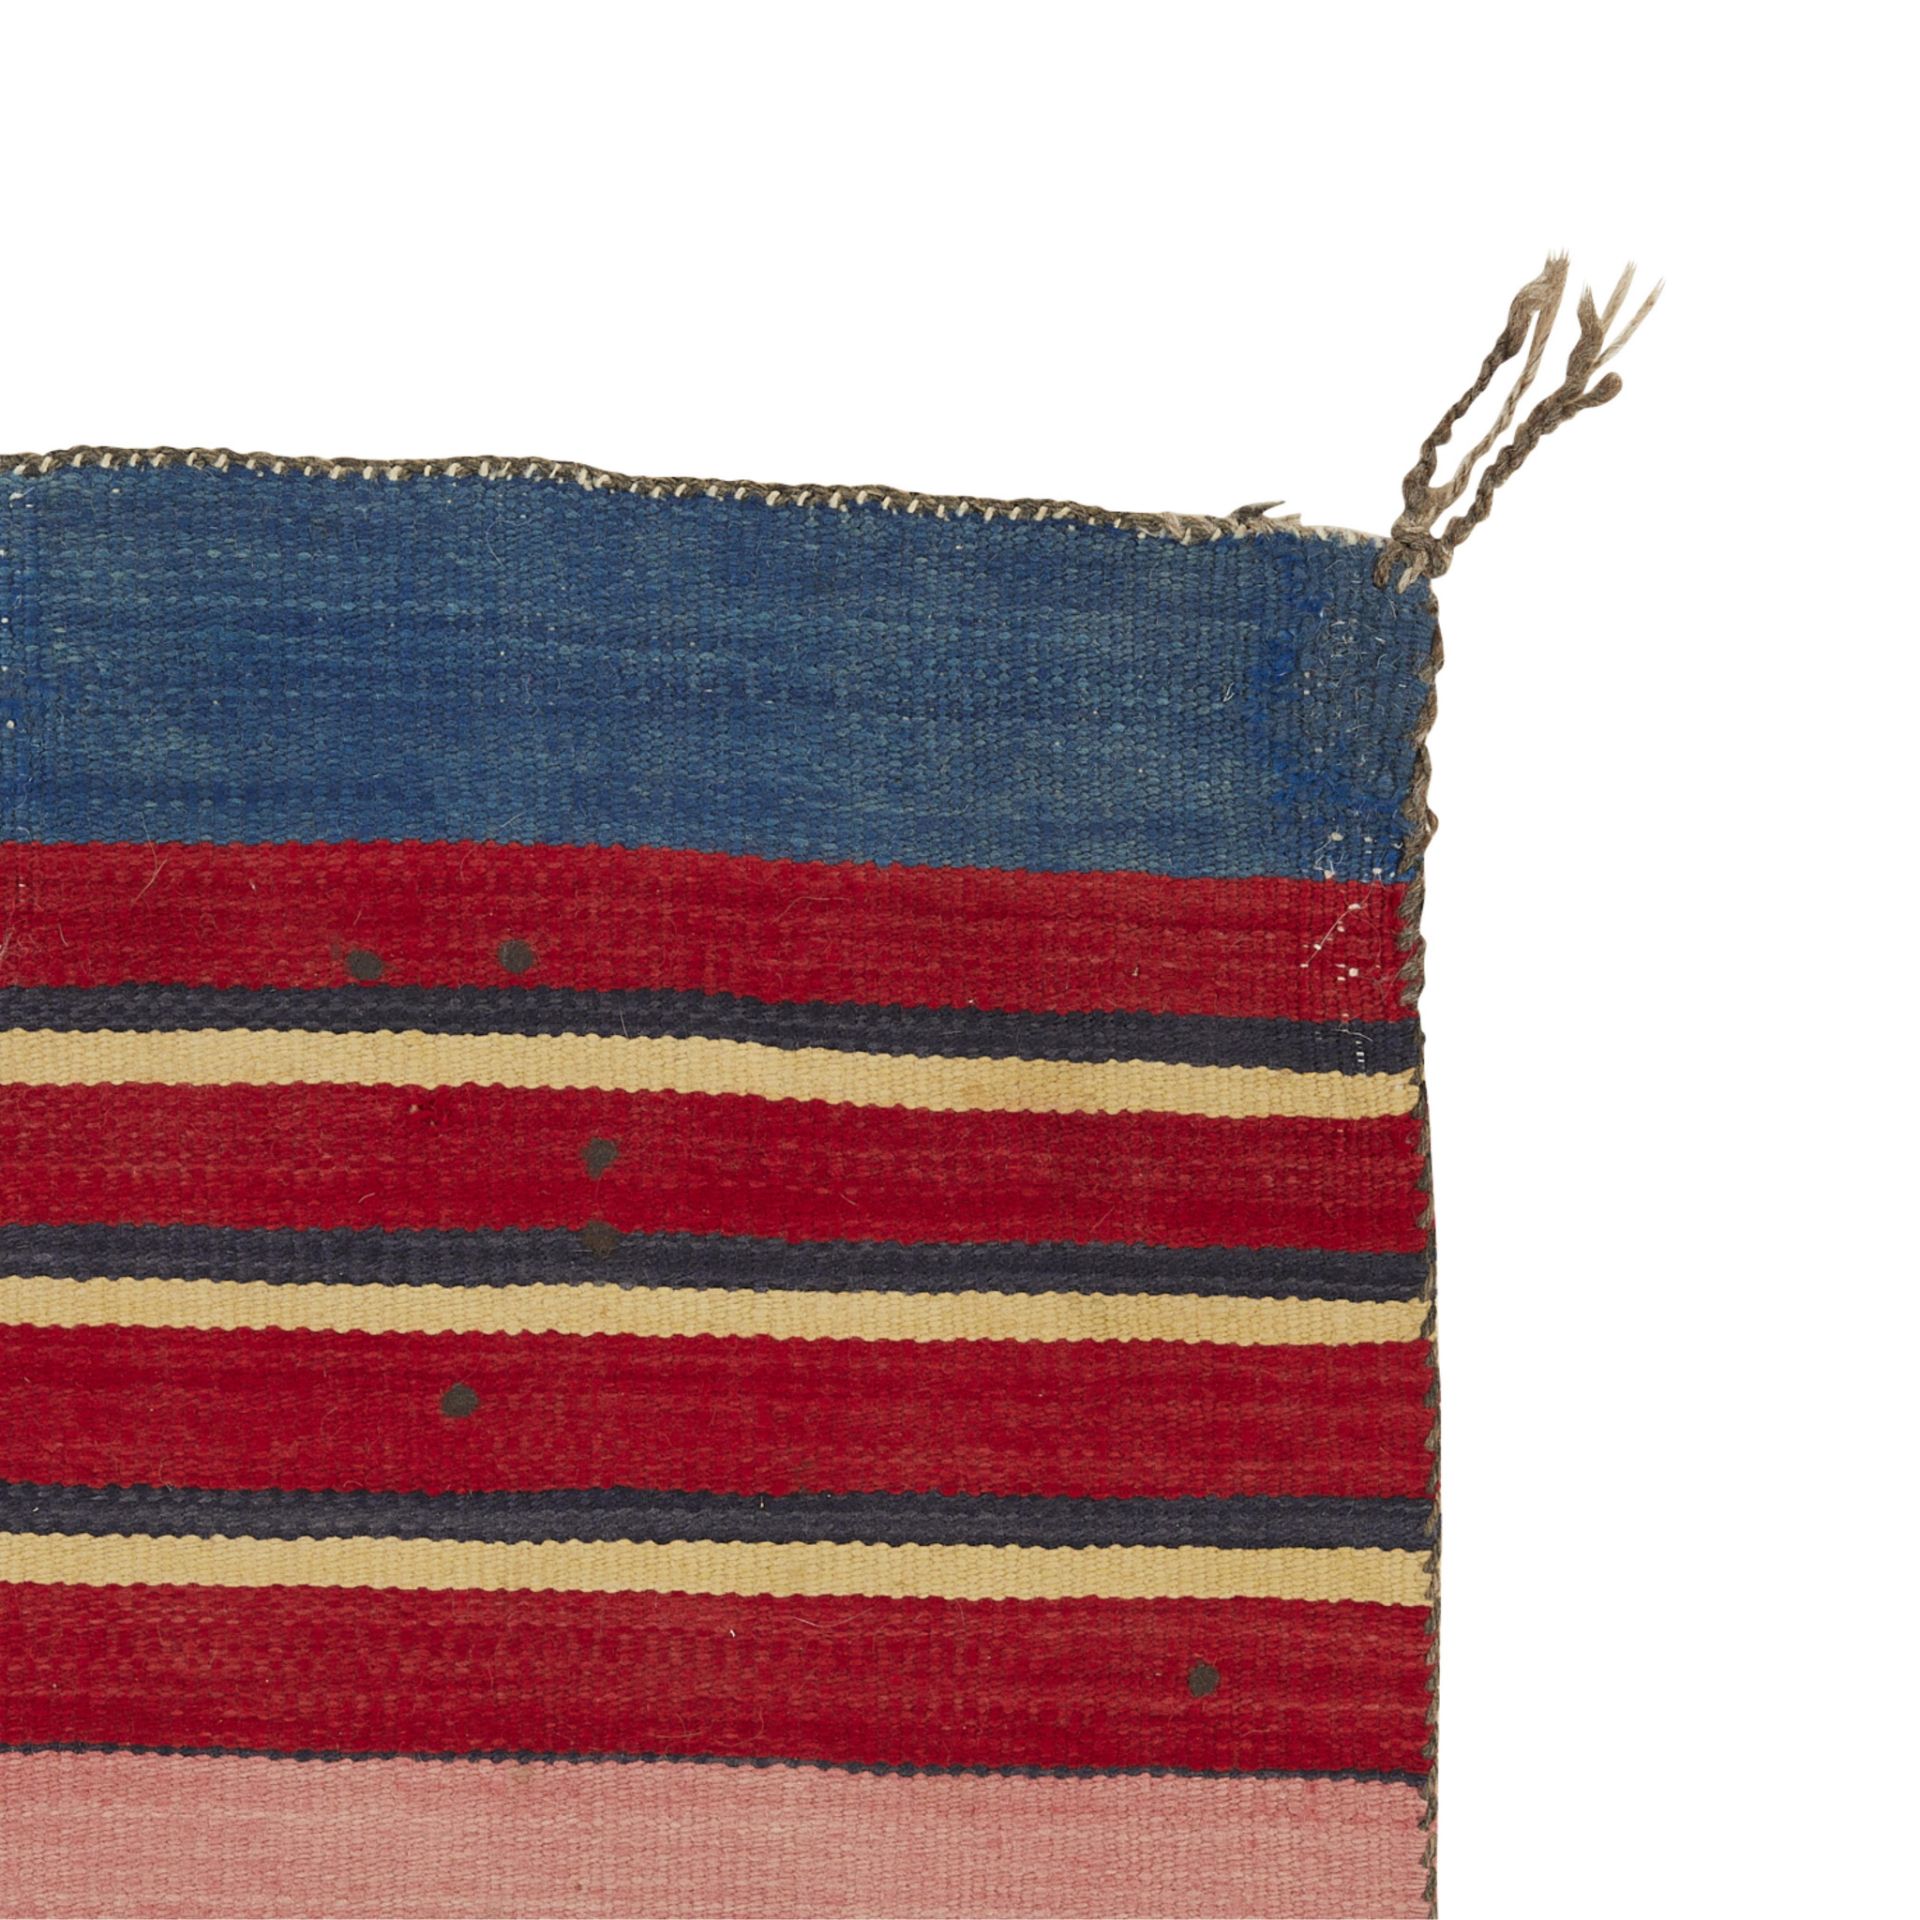 Navajo Adult Wearing Blanket 4'5" x 3'5" - Image 5 of 6